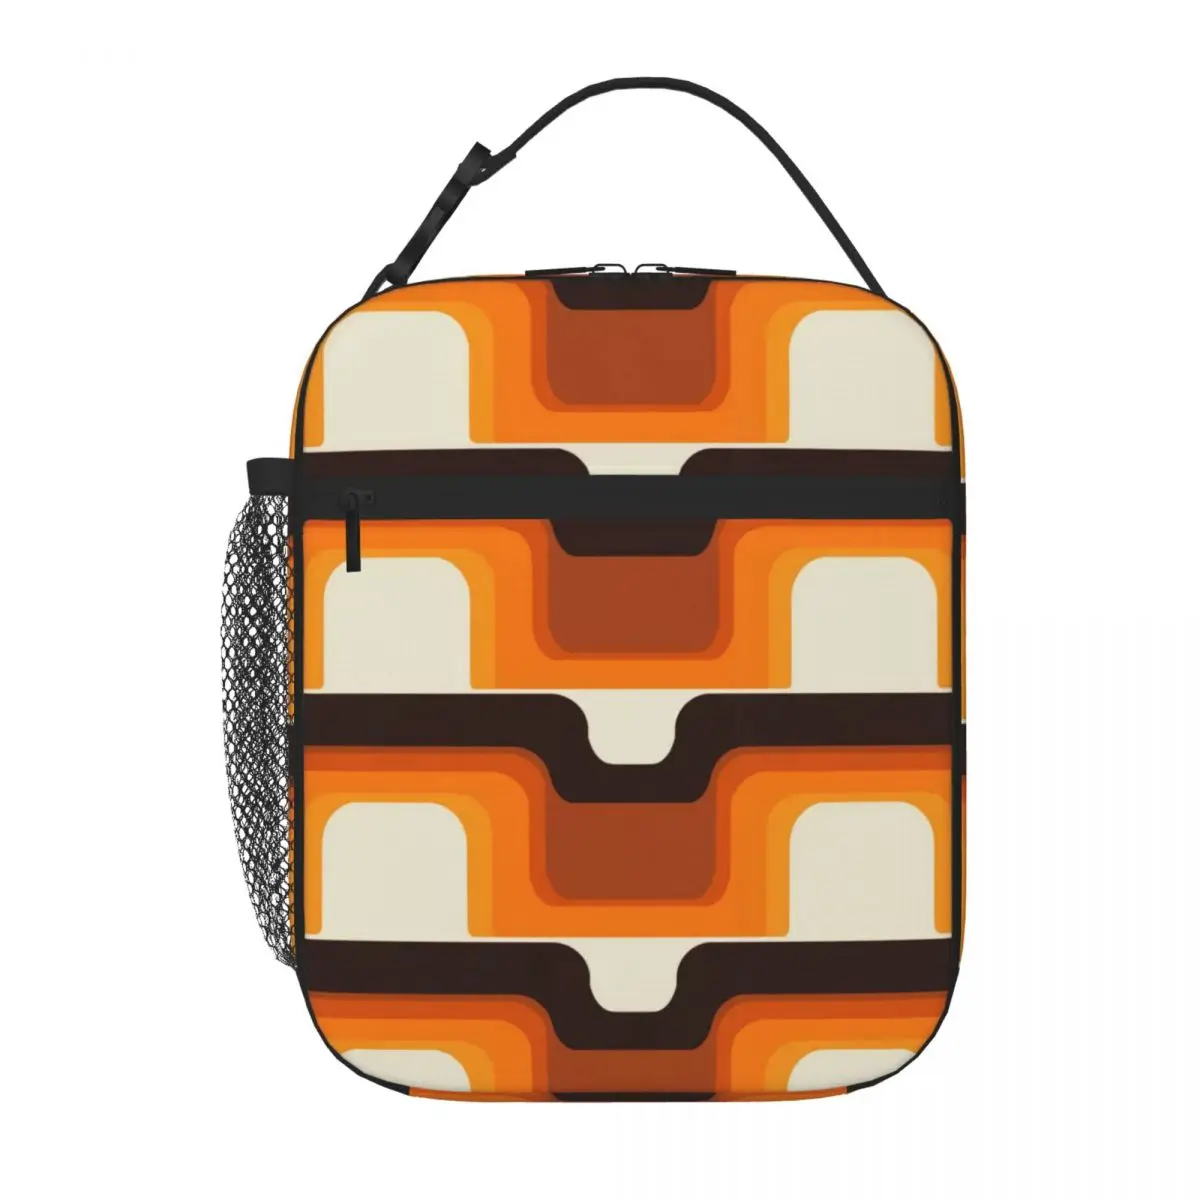 Современный стиль середины века соответствует 1970-м Оранжевым сумкам для ланча, милым сумкам для ланча, женским сумкам для ланча